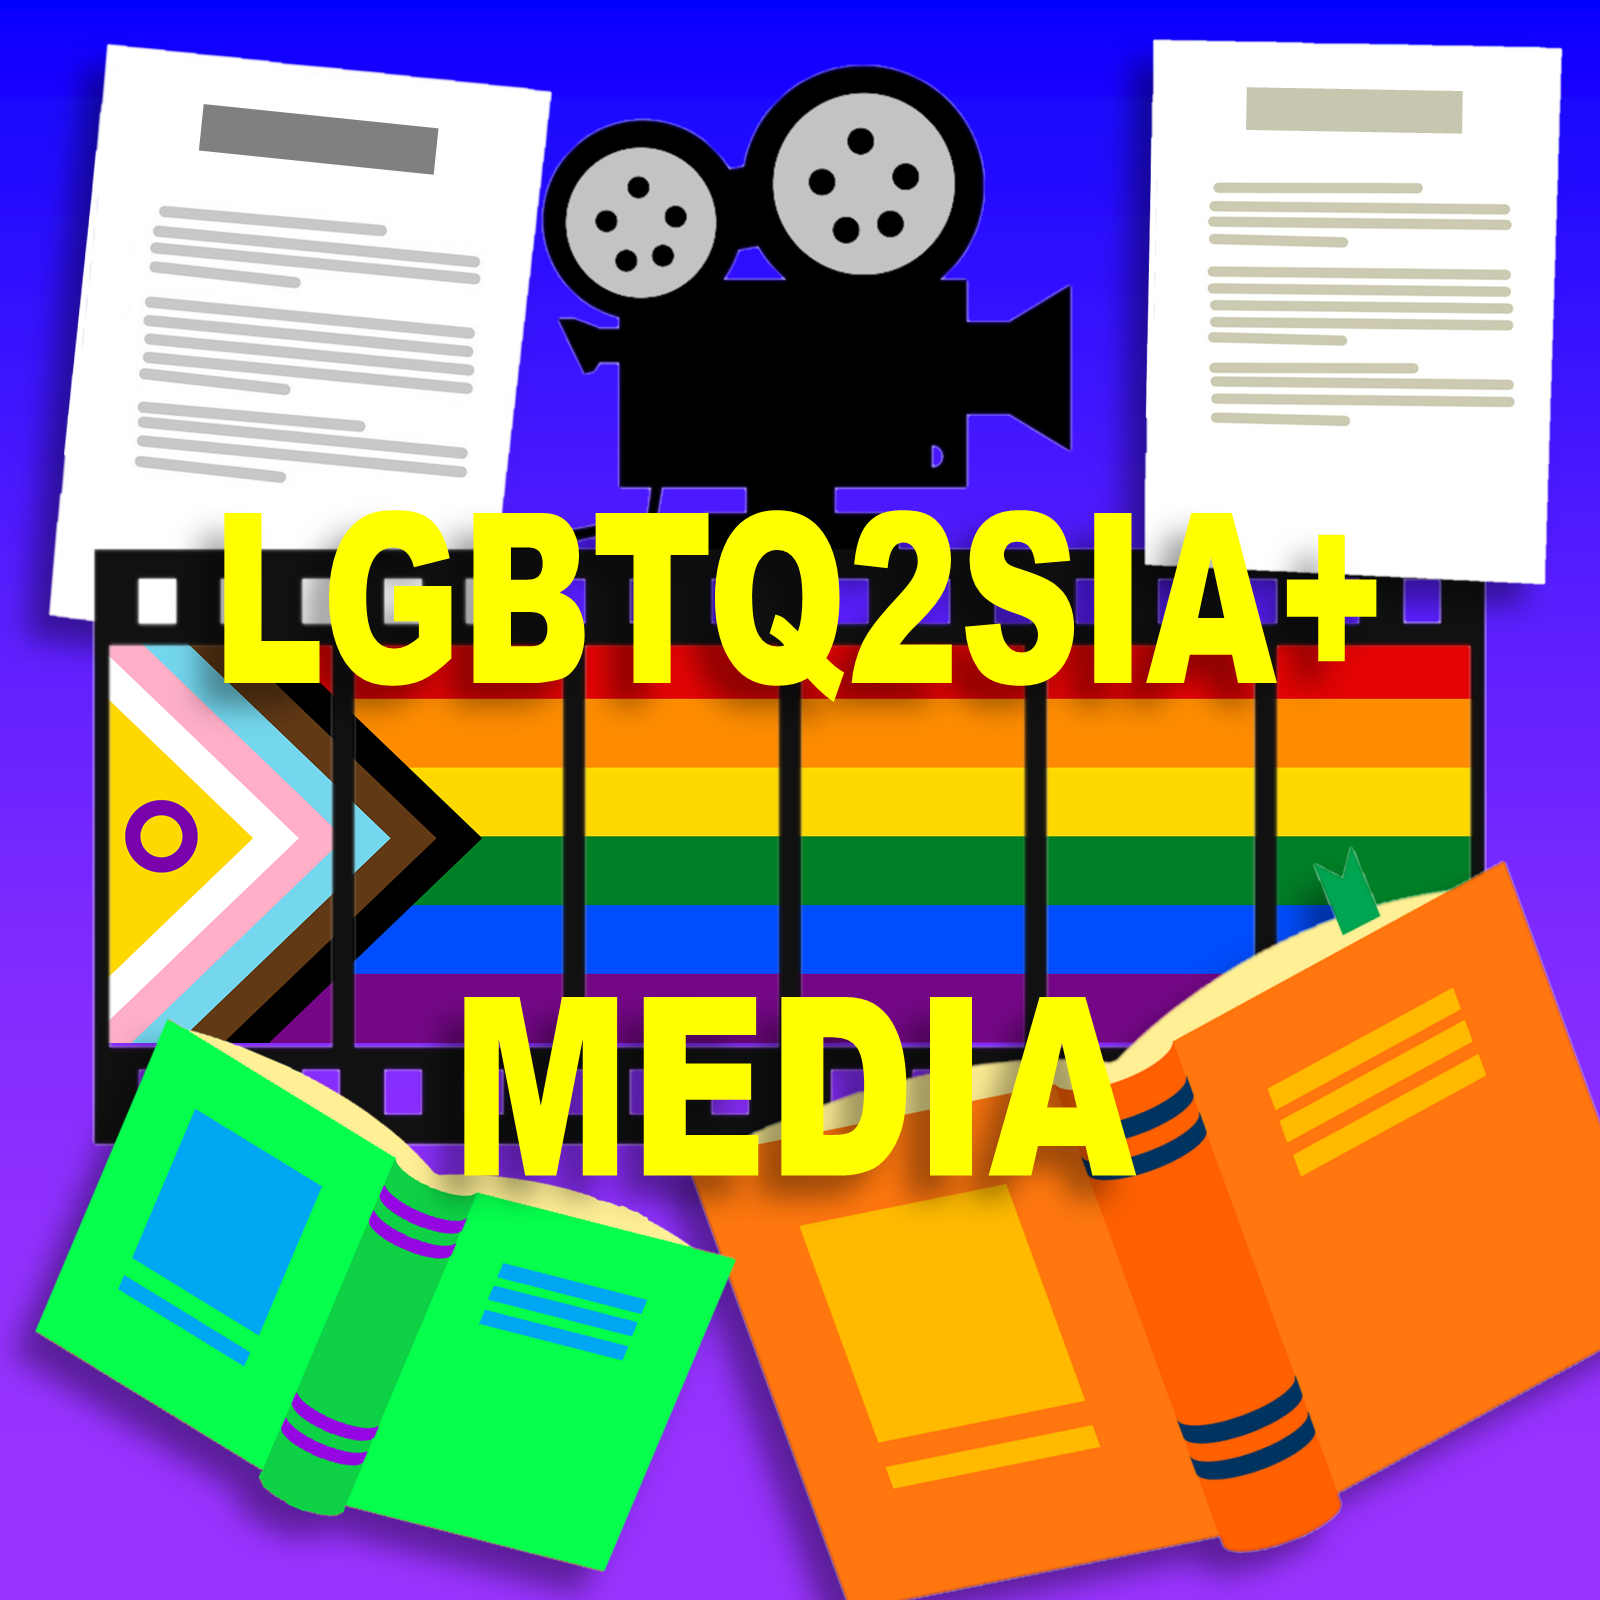 LGBTQmedia